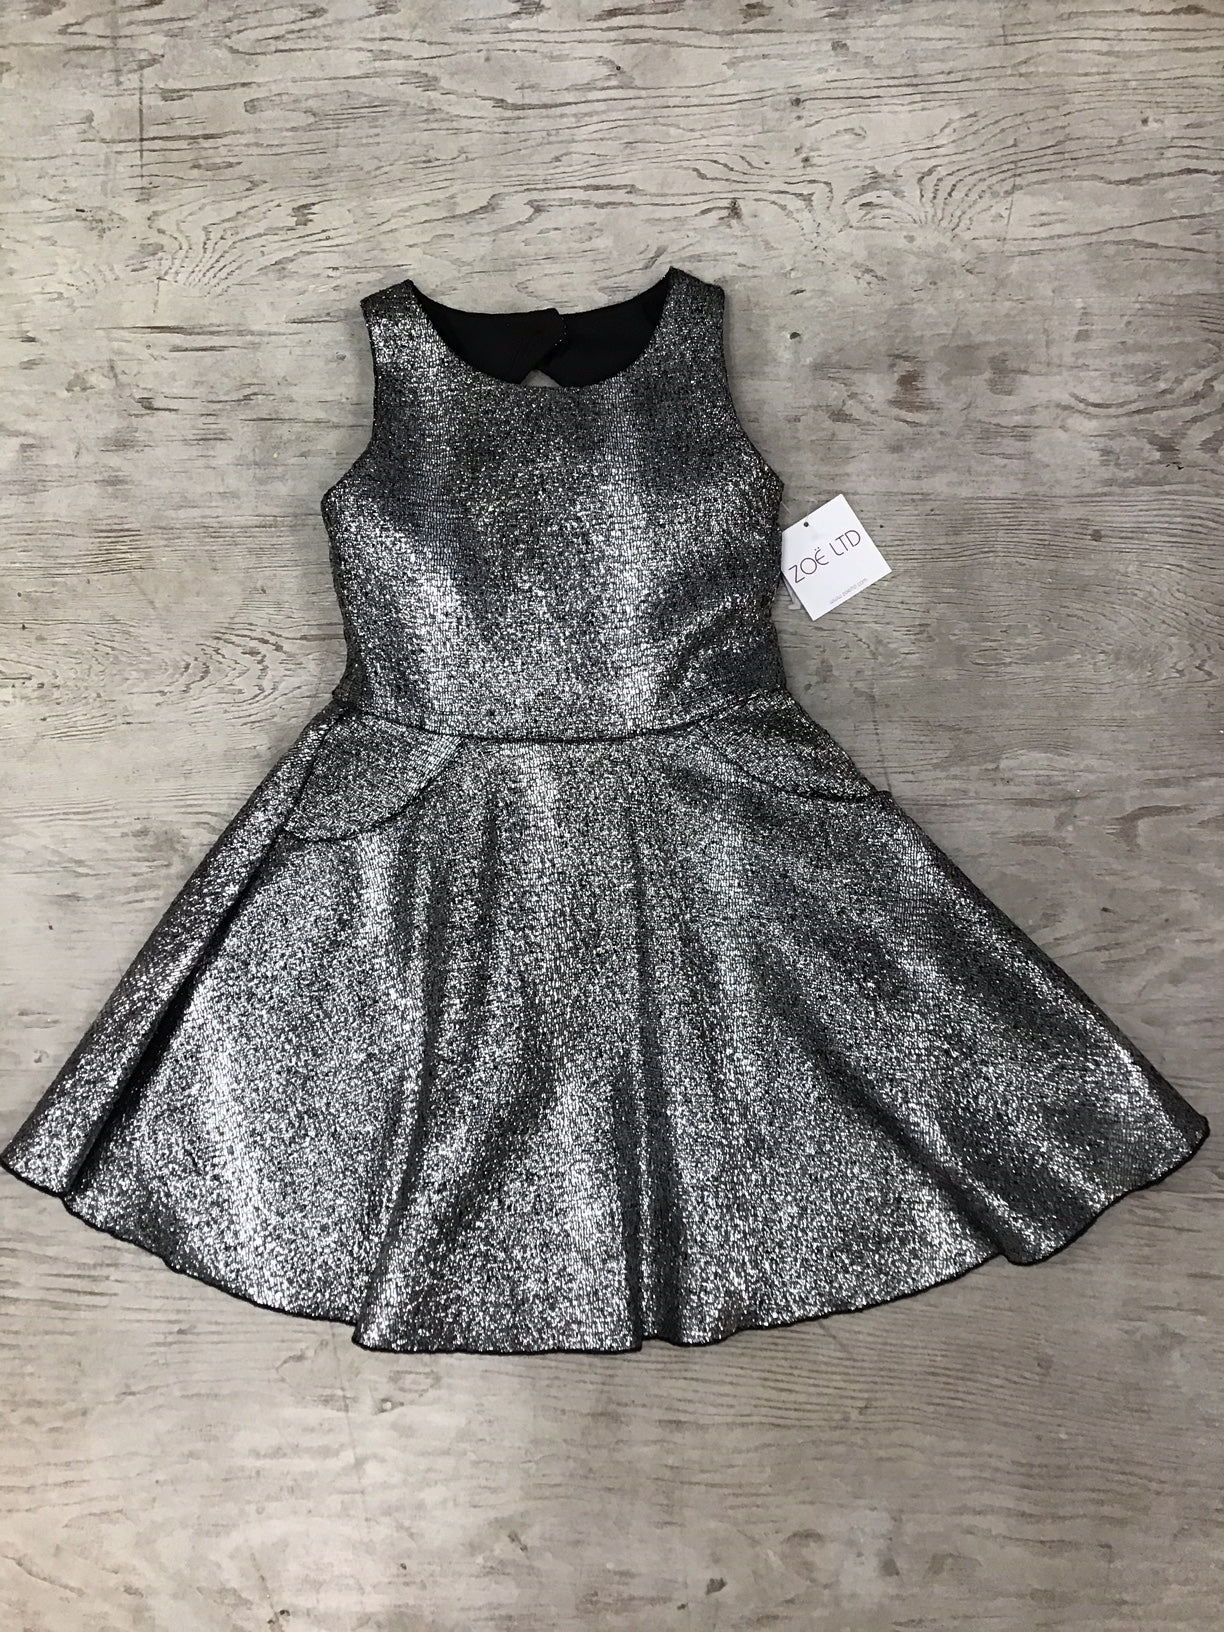 Silver "Moleskin" Dress by Zoe